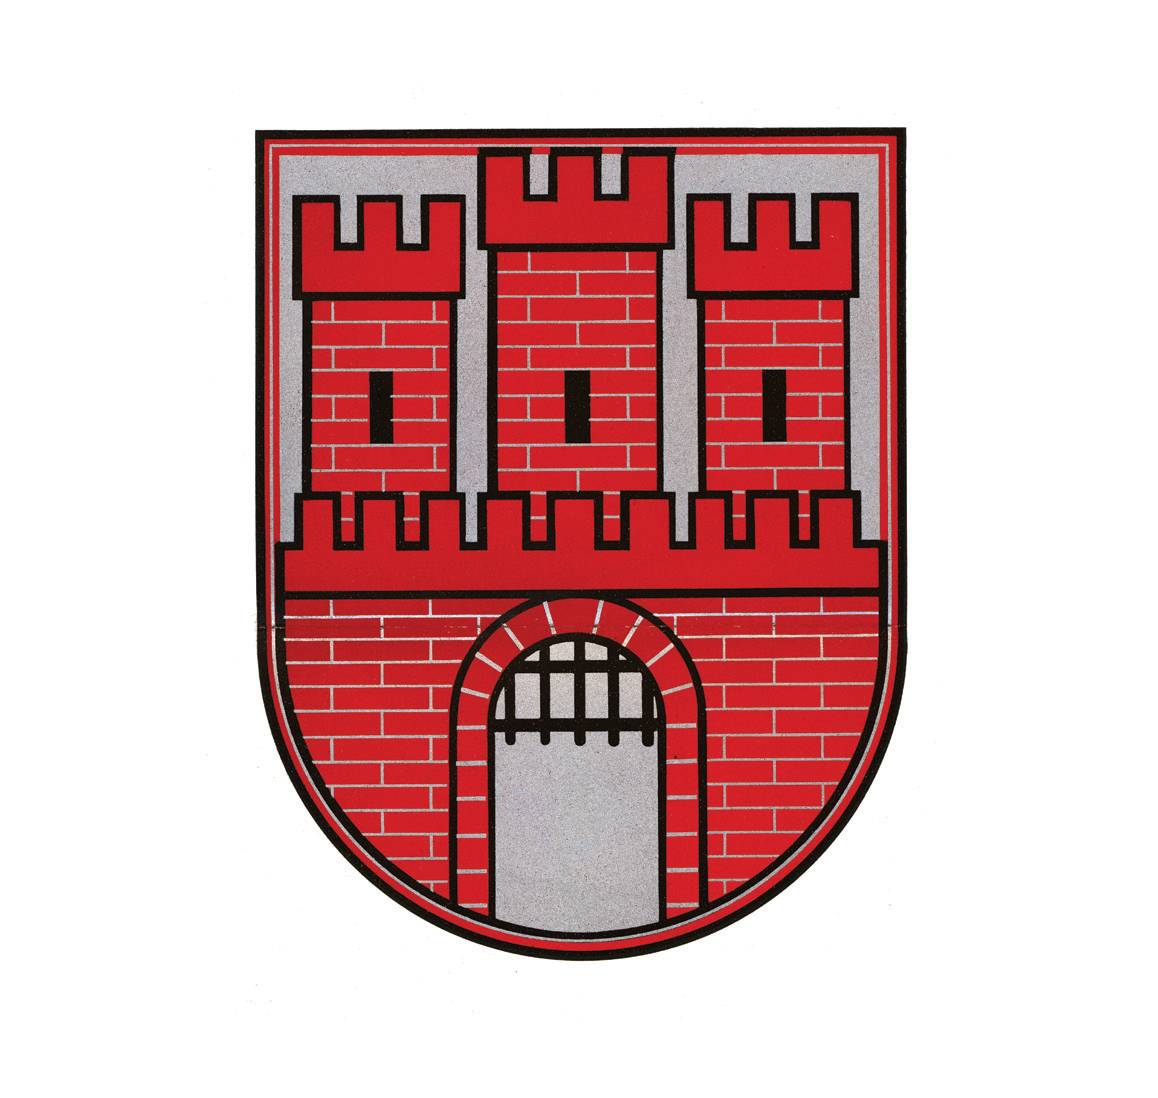 (030) Wprowadzony przez okupacyjnego starostę
miejskiego (odpowiednik prezydenta miasta)
we wrześniu 1941 r. wzór nowego herbu Krakowa,
który obowiązywał do końca niemieckiej okupacji;
herb bez orła, bez korony królewskiej wieńczącej
tarczę i bez historycznej renesansowej tarczy
(ANK, sygn. 29/33/SMKr 19, s. 559)